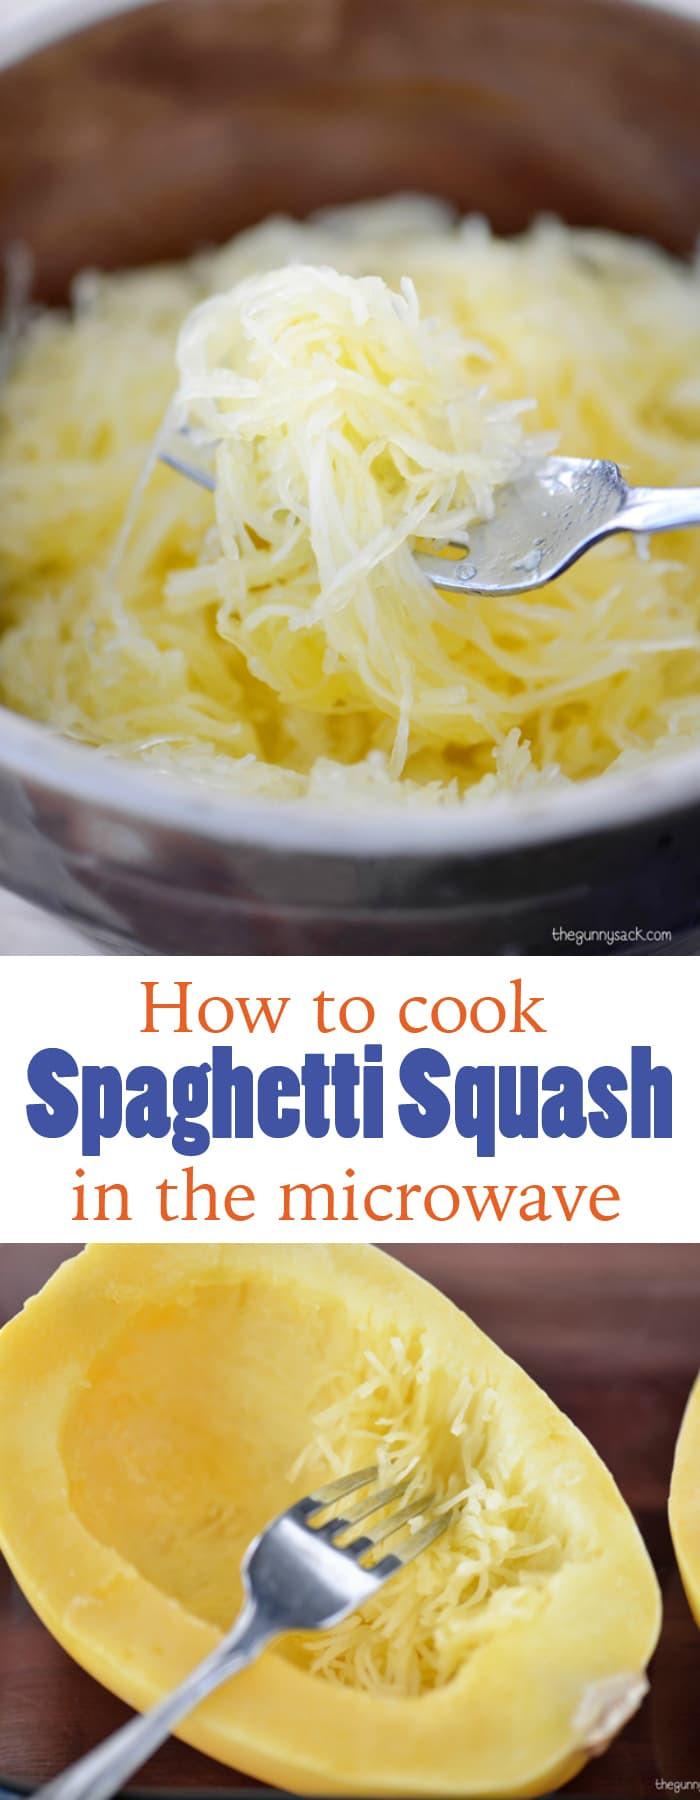 Microwave Spaghetti Squash
 Recipe For Spaghetti Squash With Meatballs